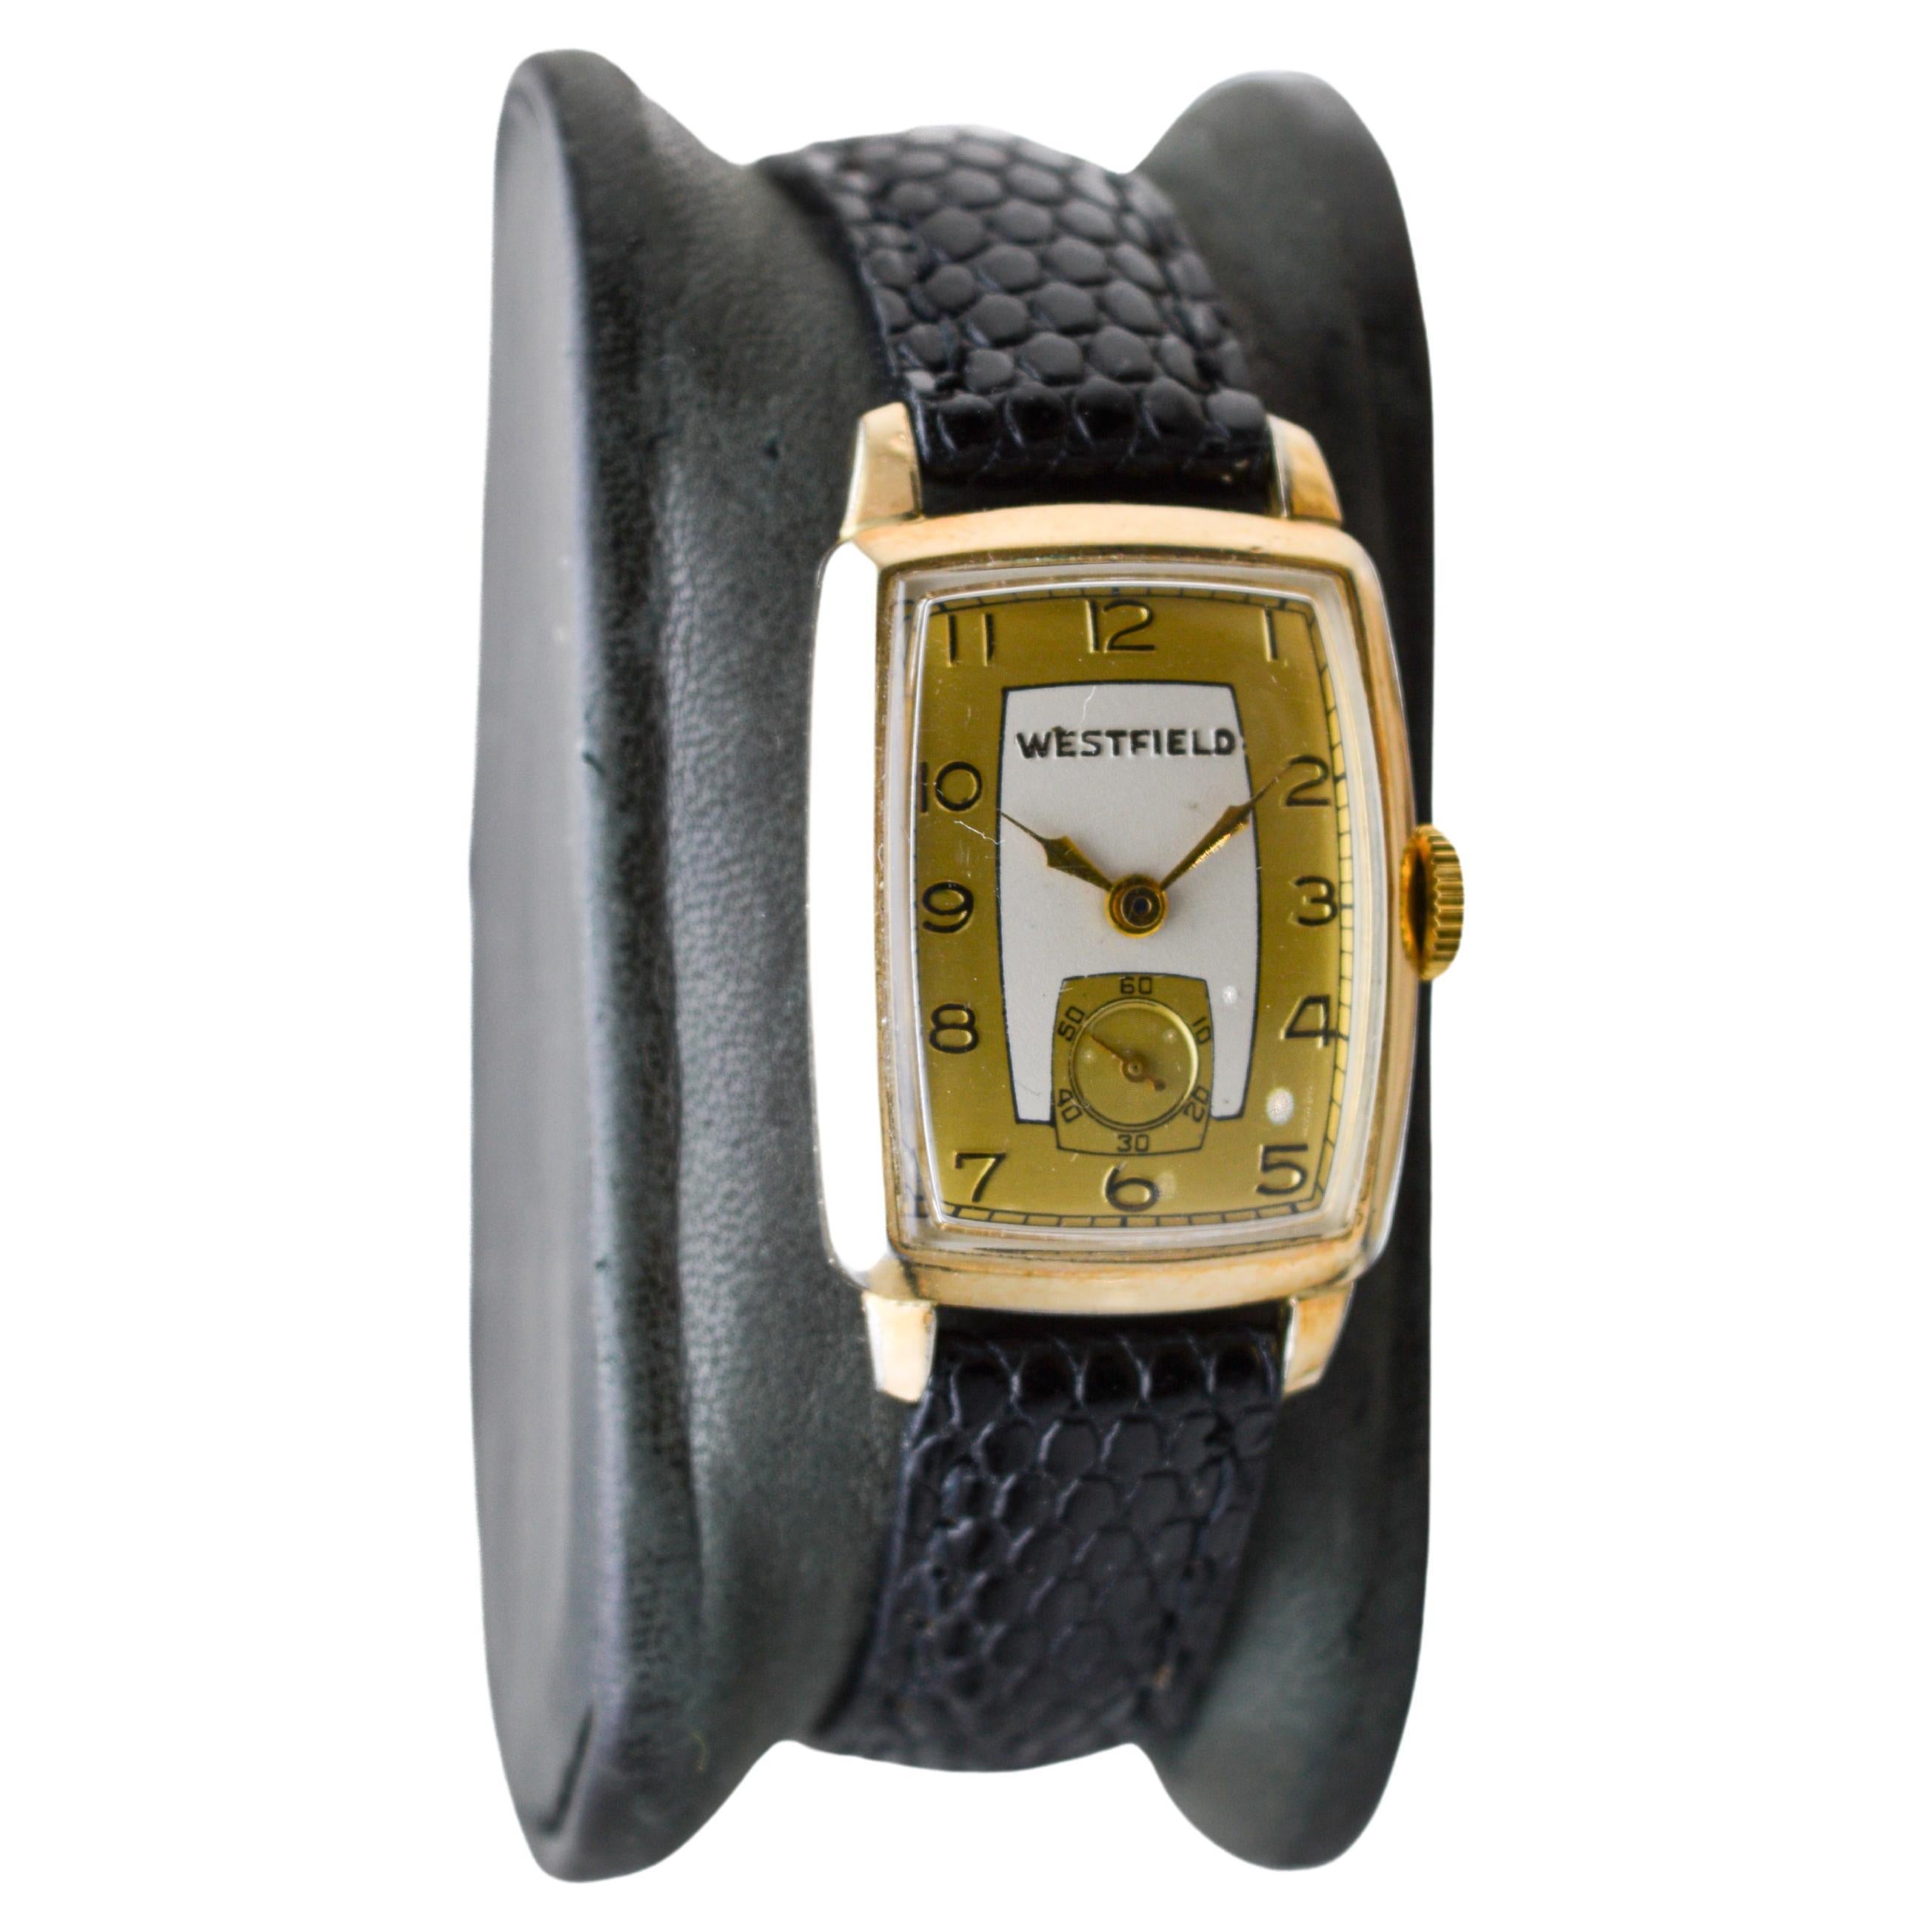 FABRIK / HAUS: Westfield Watch Company
STIL / REFERENZ: Art Deco
METALL / MATERIAL: Gelbgold-Füllung
CIRCA / JAHR: 1940er Jahre
ABMESSUNGEN / GRÖSSE: Länge 35mm X Breite 22mm
UHRWERK / KALIBER: Handaufzug / 7 Jewels 
ZIFFERBLATT / ZEIGER: Zweifarbig